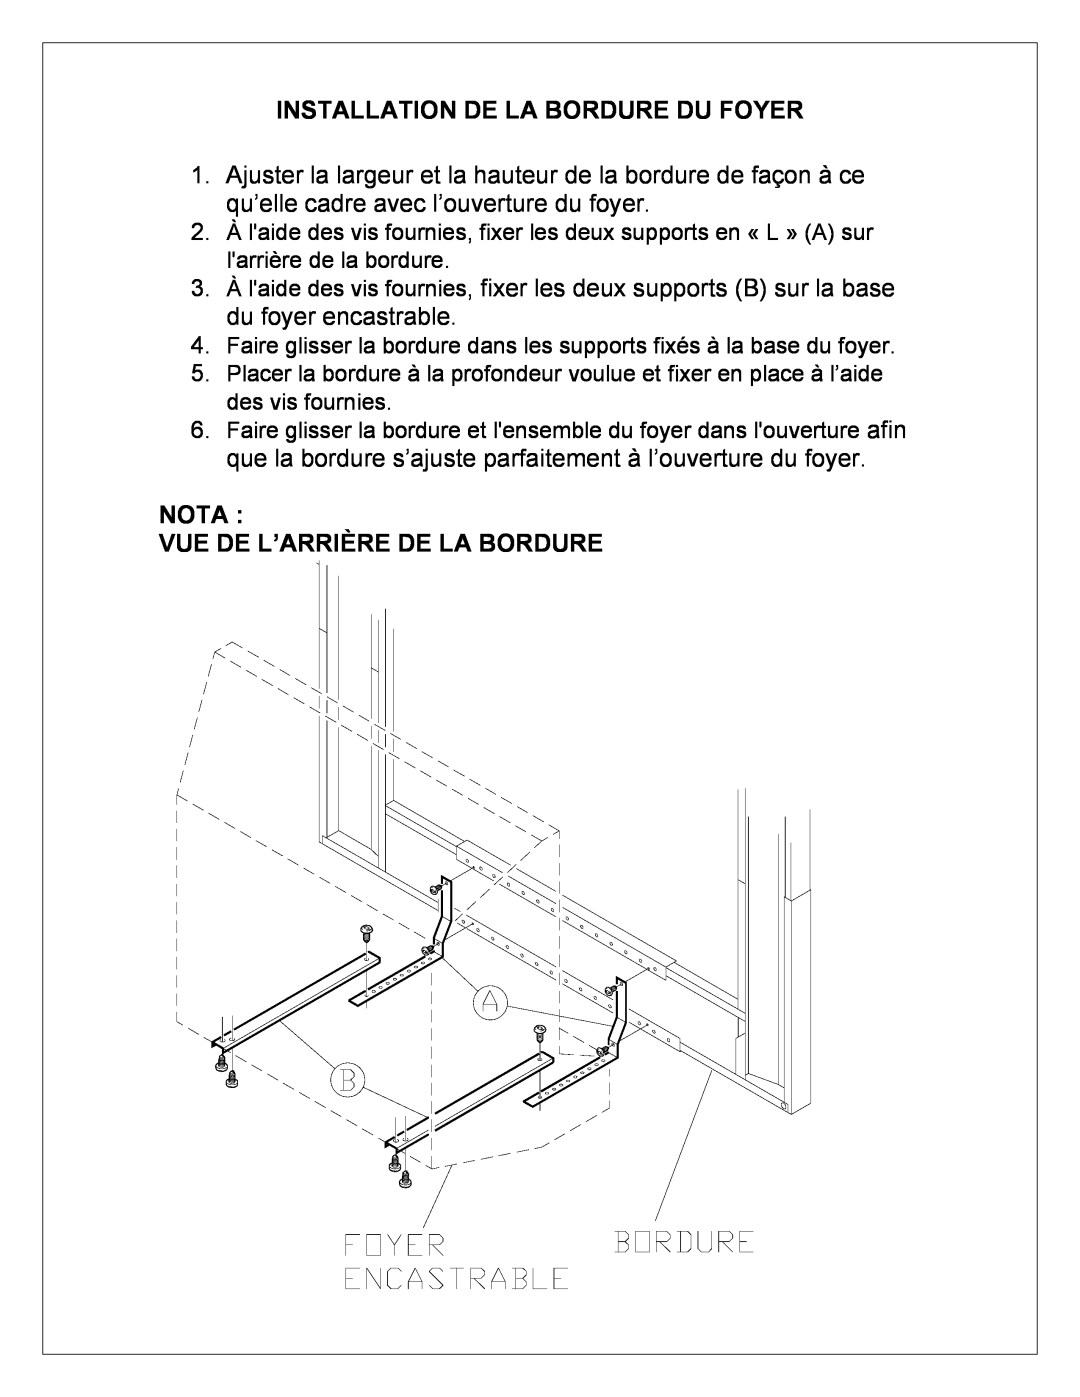 Dimplex DFI23TRIMX manual Installation De La Bordure Du Foyer, Nota Vue De L’Arrière De La Bordure 